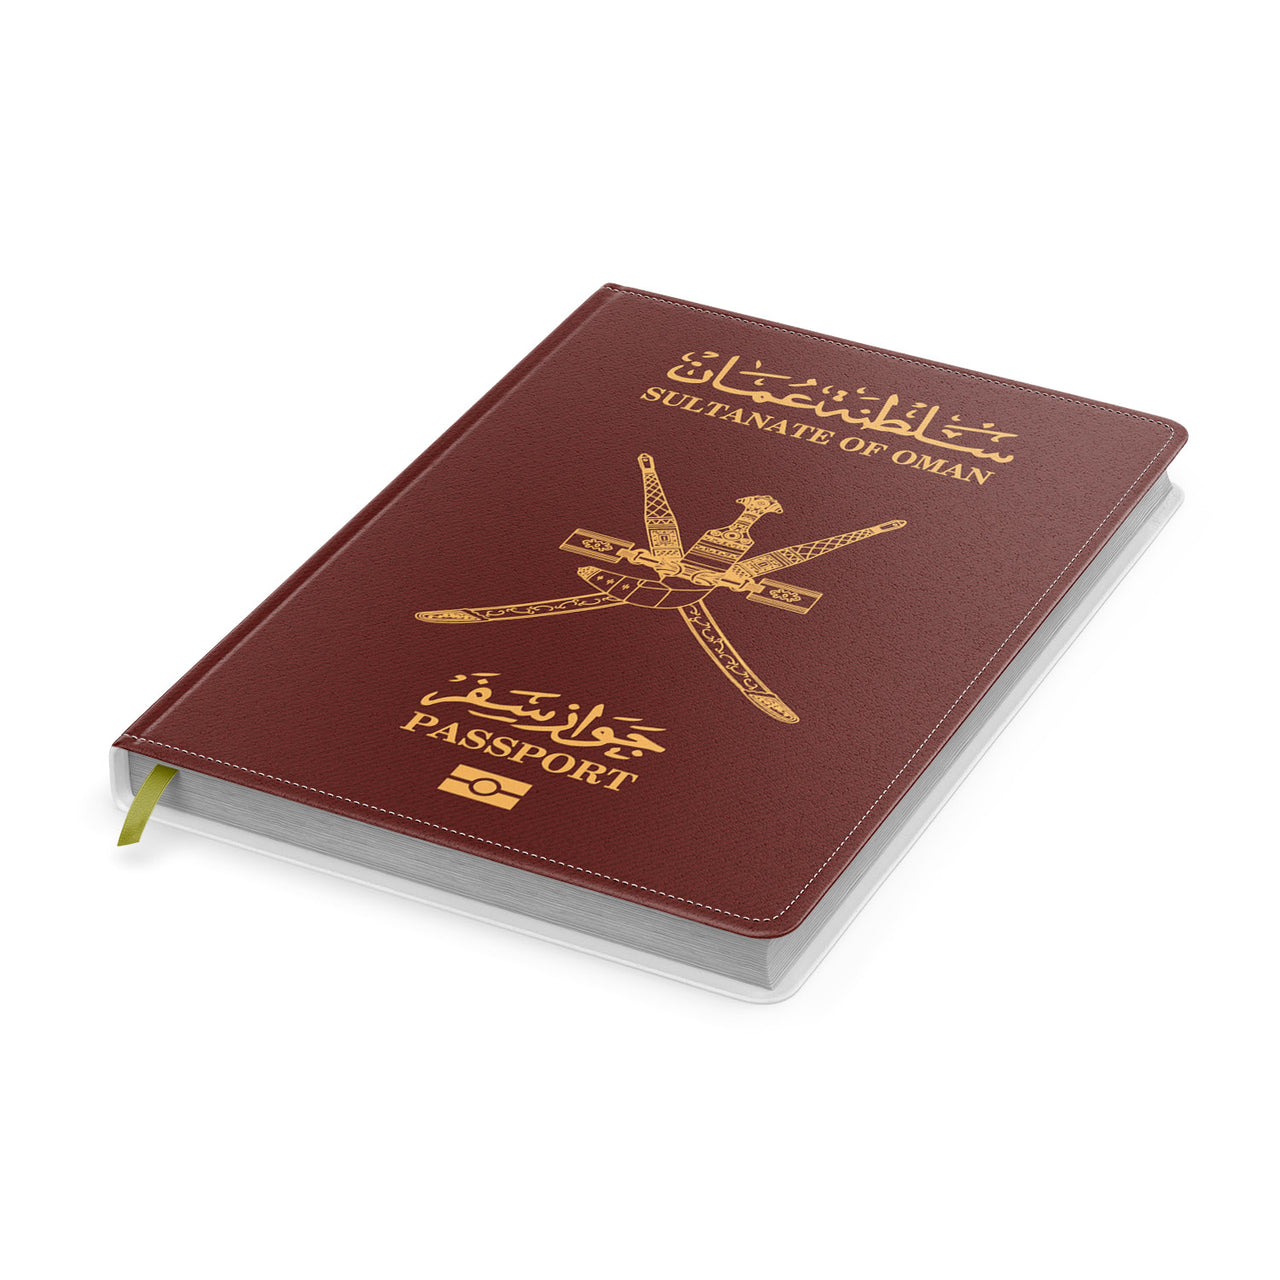 Oman Passport Designed Notebooks